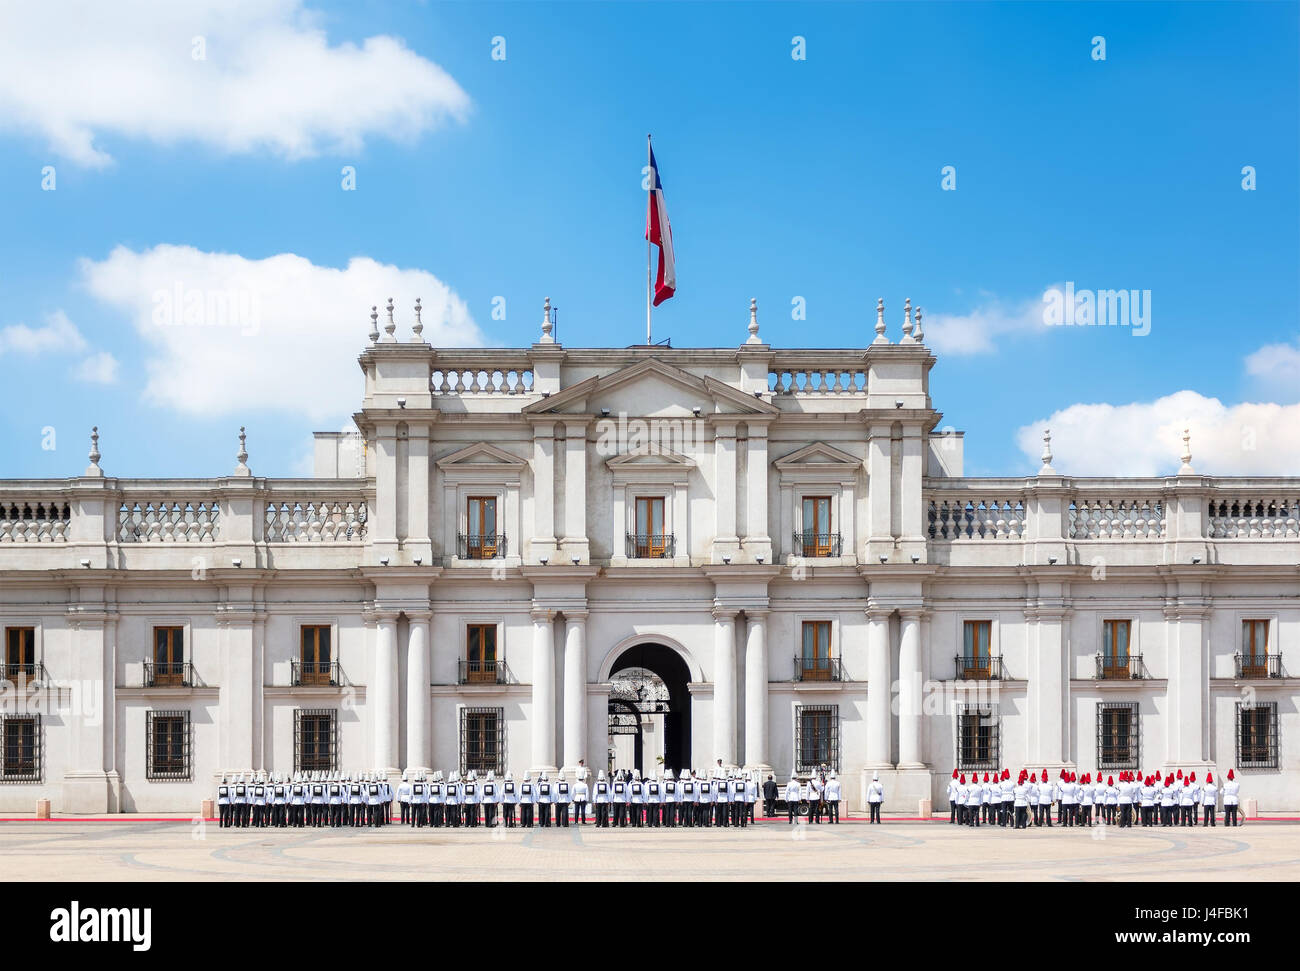 A public procession in front of La Moneda Palace (Palacio de La Moneda) in Santiago, Chile. Stock Photo